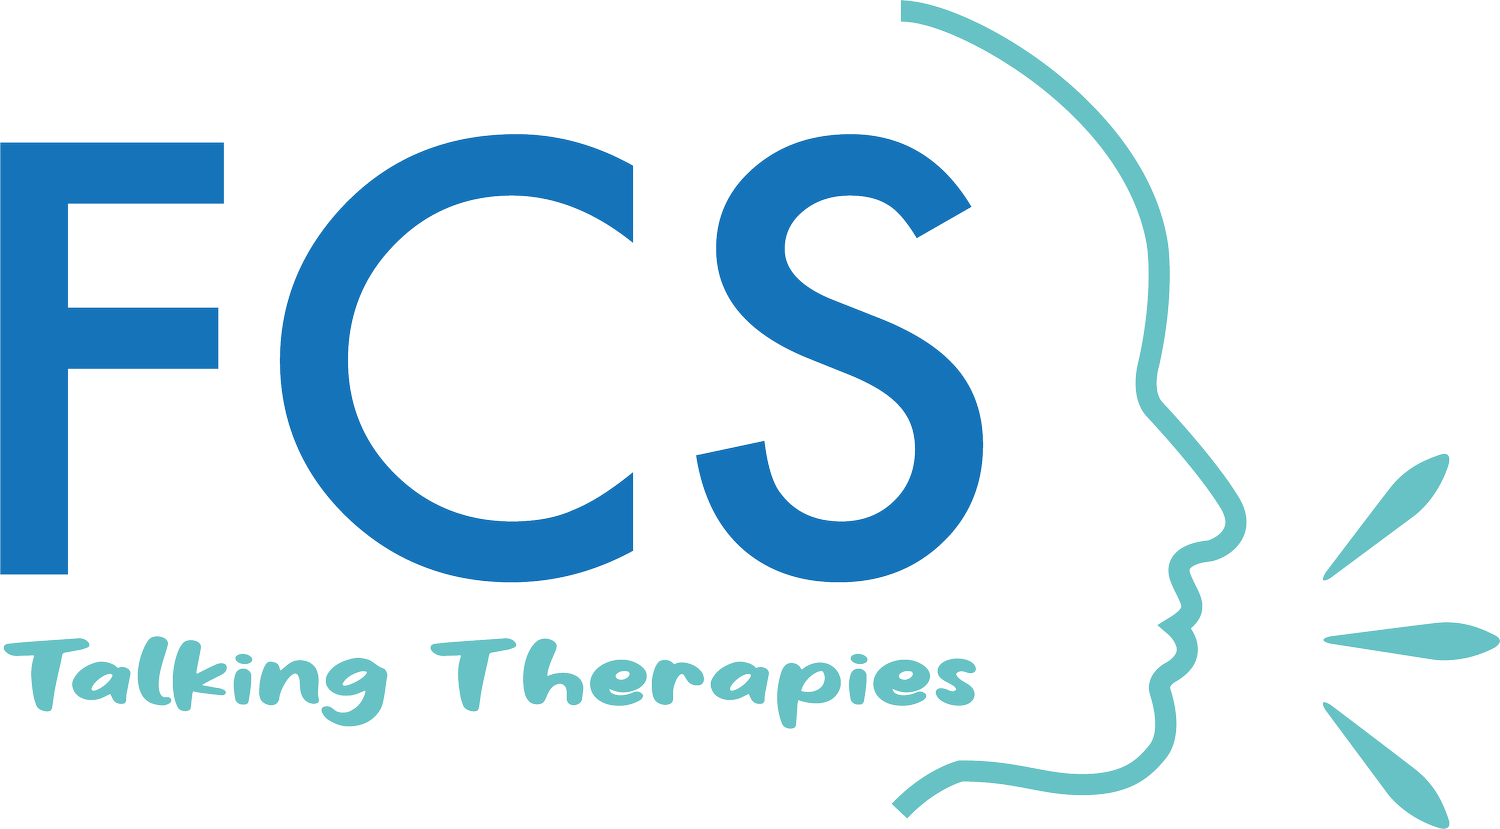 FCS: Talking Therapies